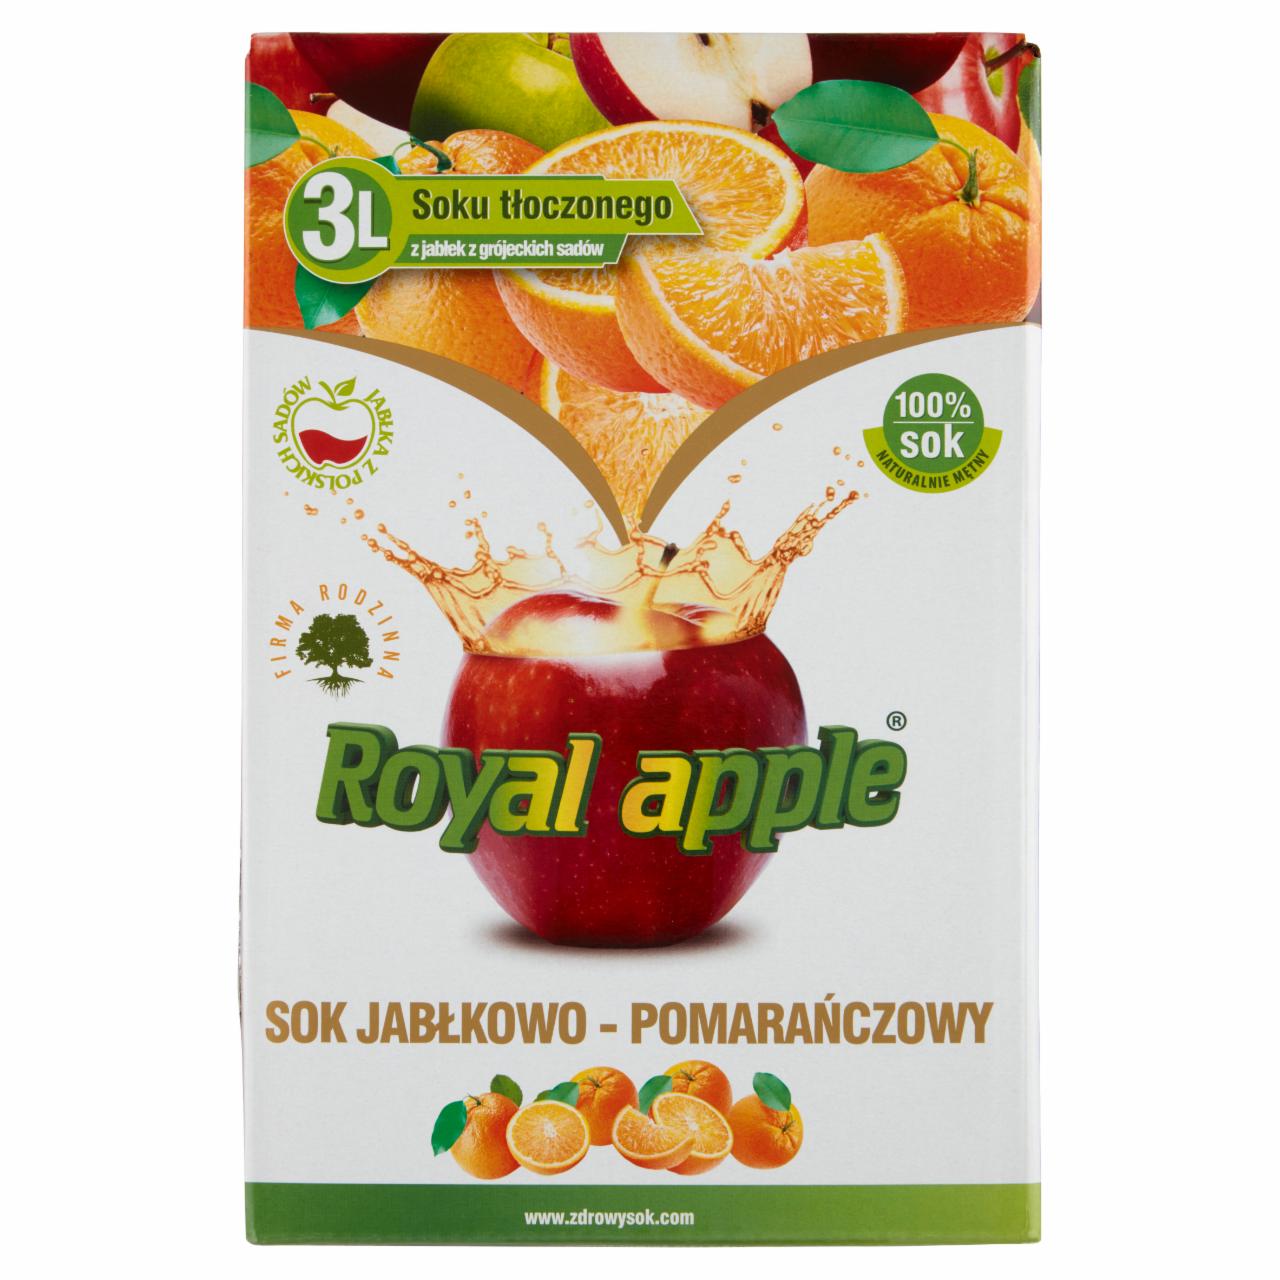 Zdjęcia - Royal apple Sok jabłkowo-pomarańczowy 3 l